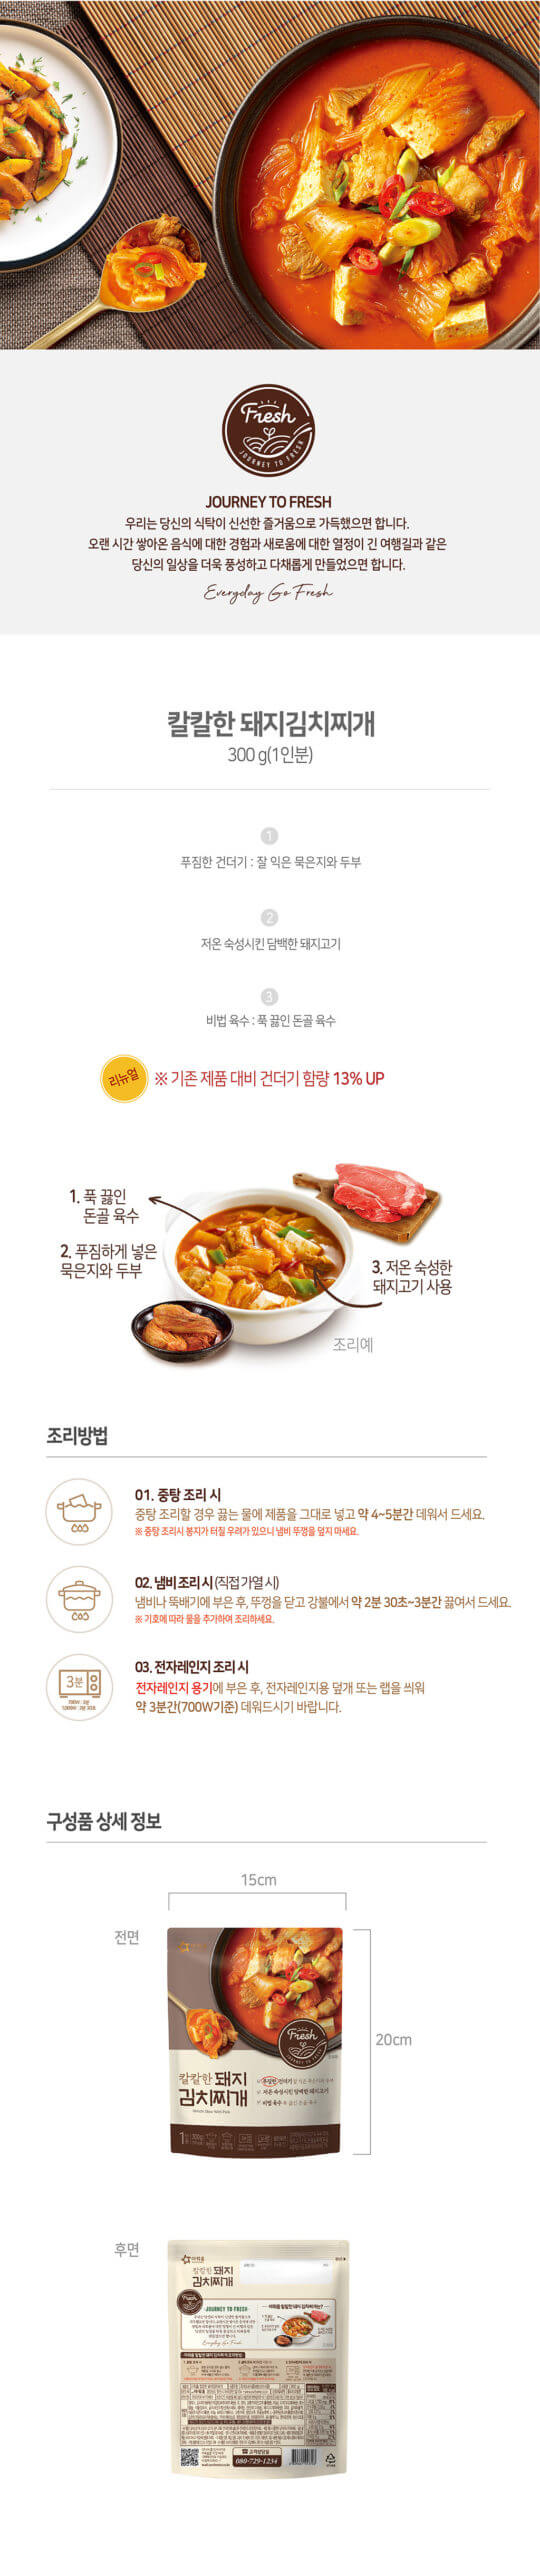 韓國食品-[Ourhome] Kimchi stew with pork 300g